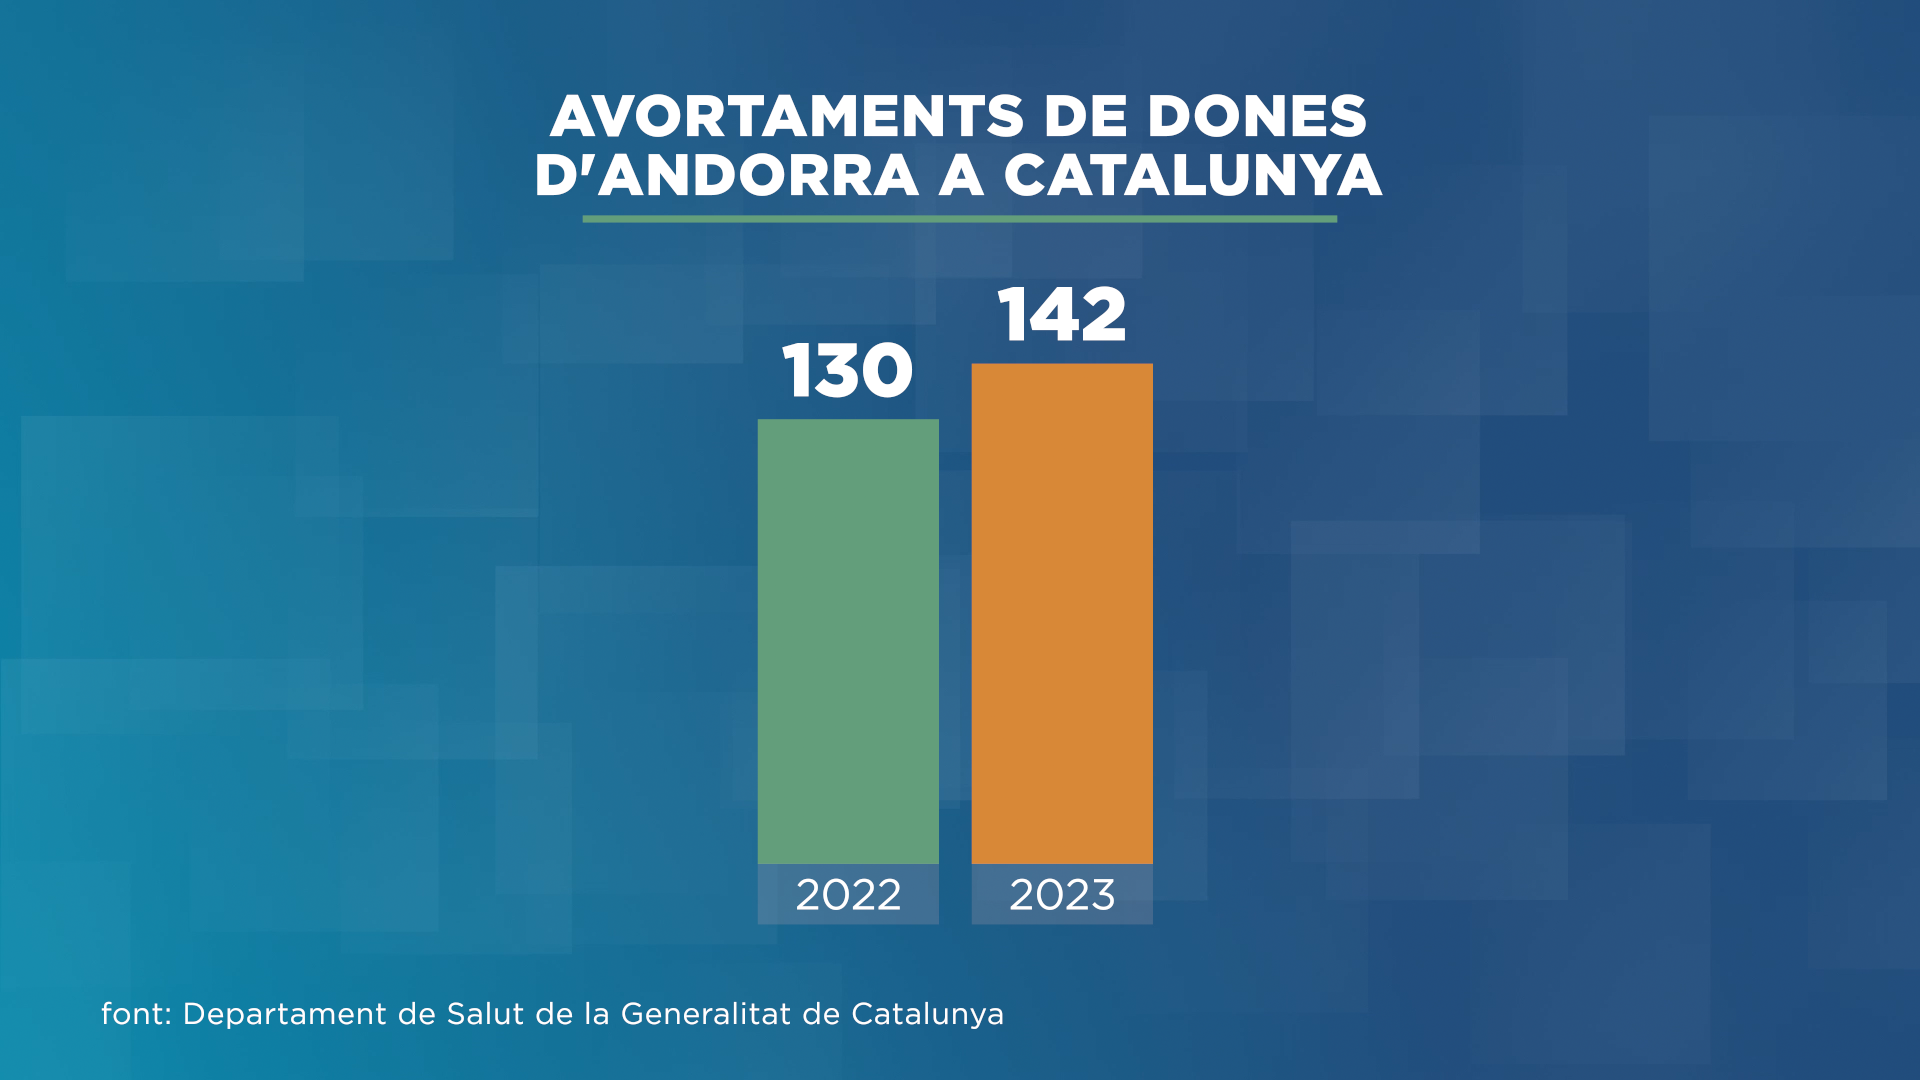 142 dones d'Andorra avorten a la sanitat catalana